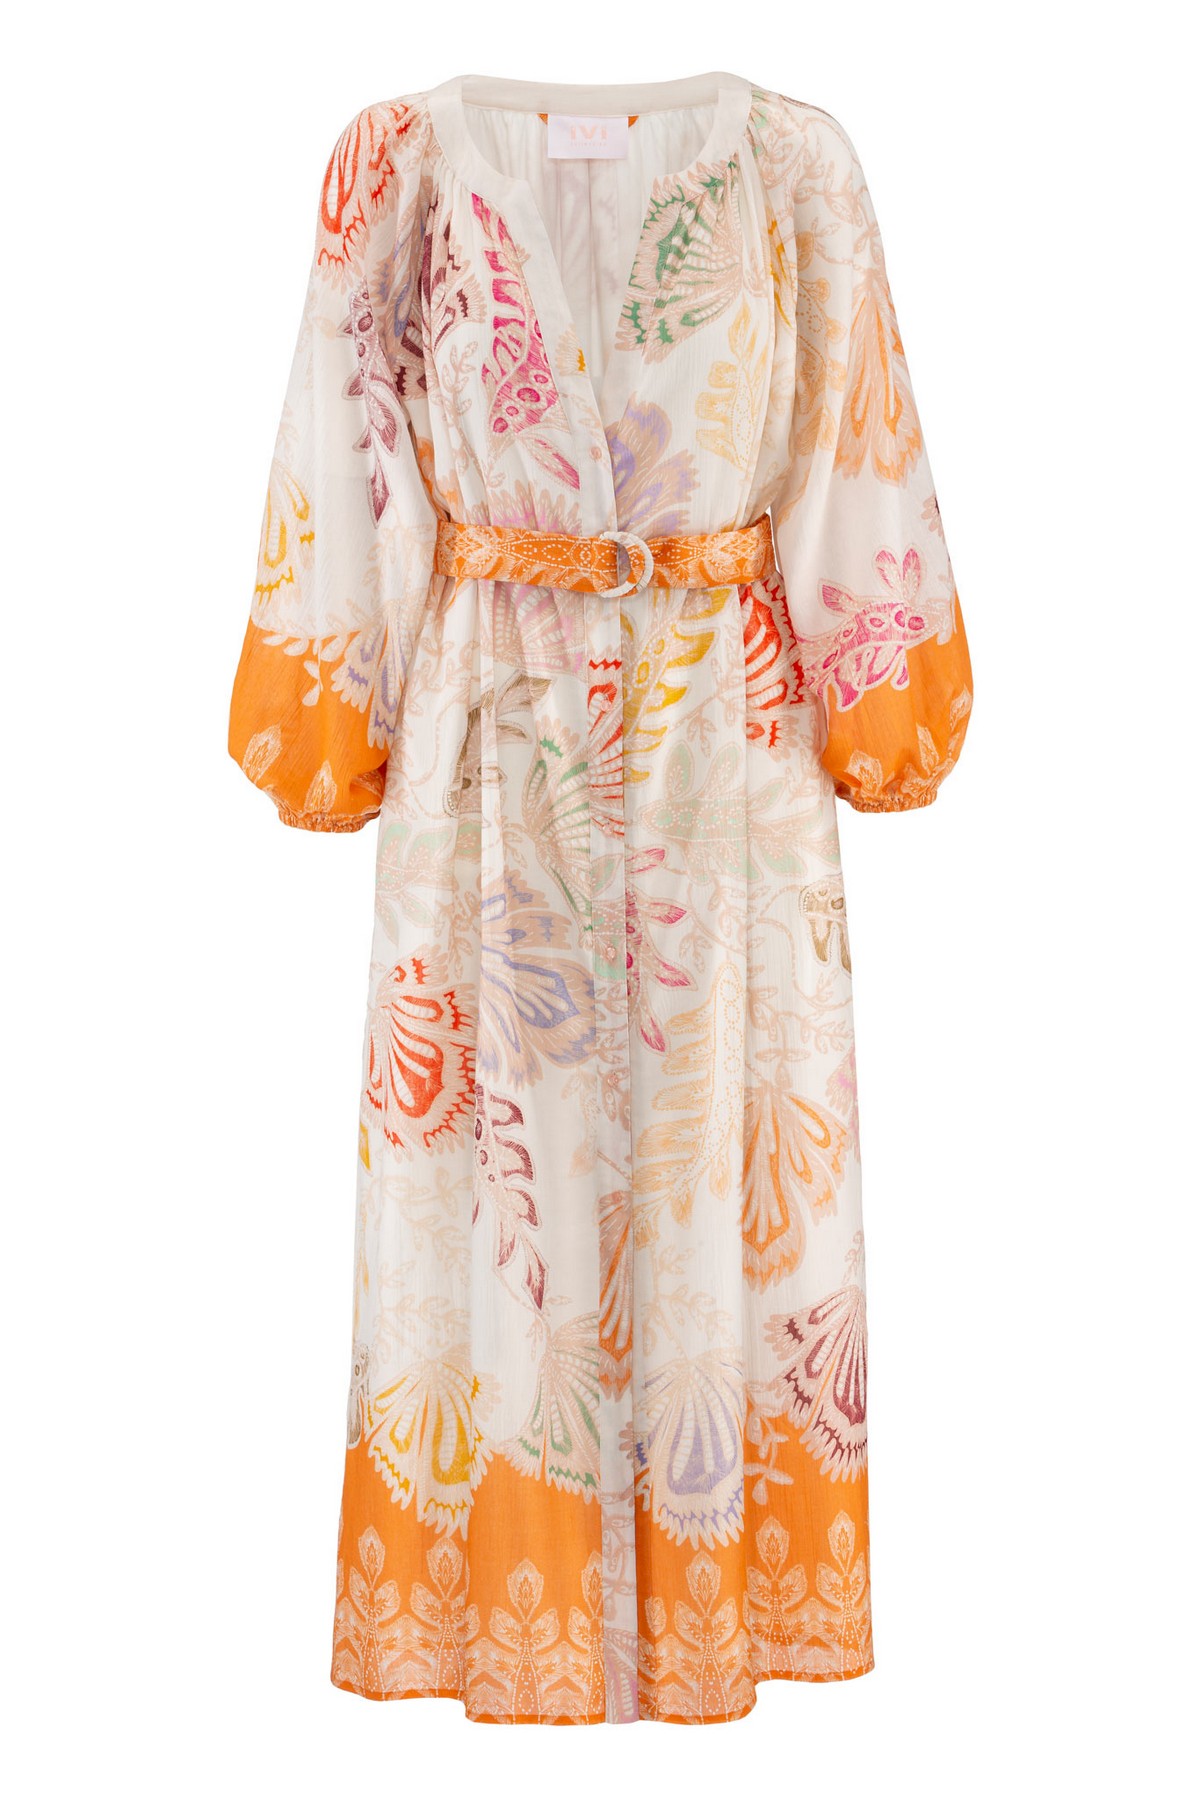 Kleed lang katoen voile in de kleur mandarijn van het merk Ivi Collection